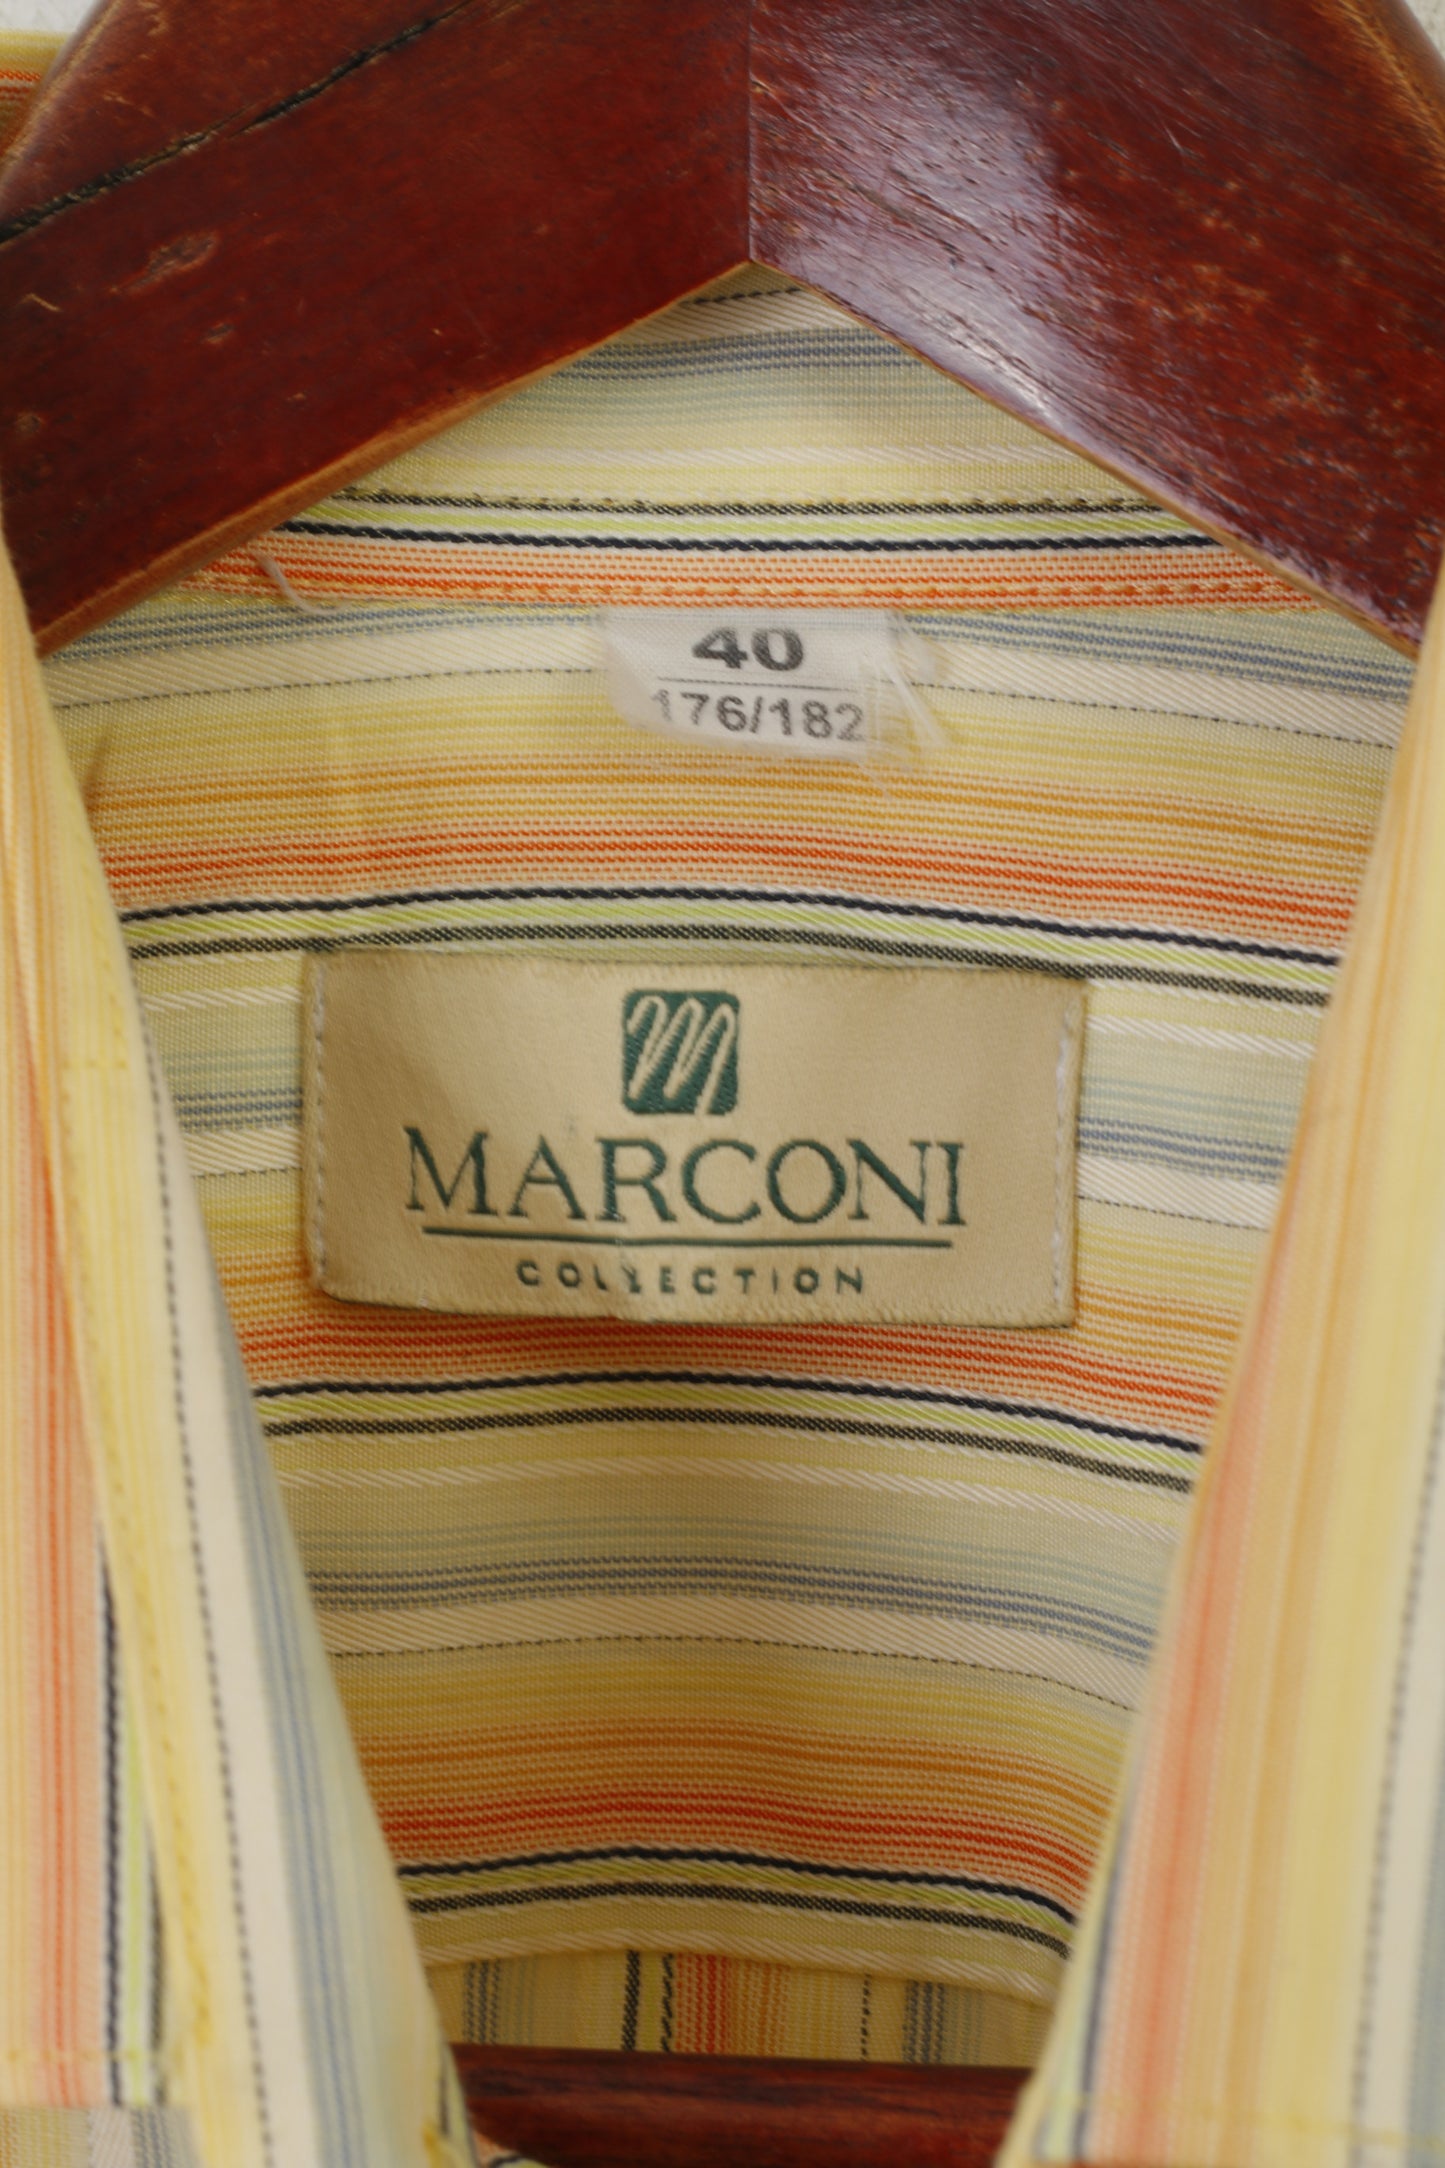 Collezione Marconi Uomo 40 176/182 M Camicia Casual a Righe in Cotone Giallo a Maniche Lunghe